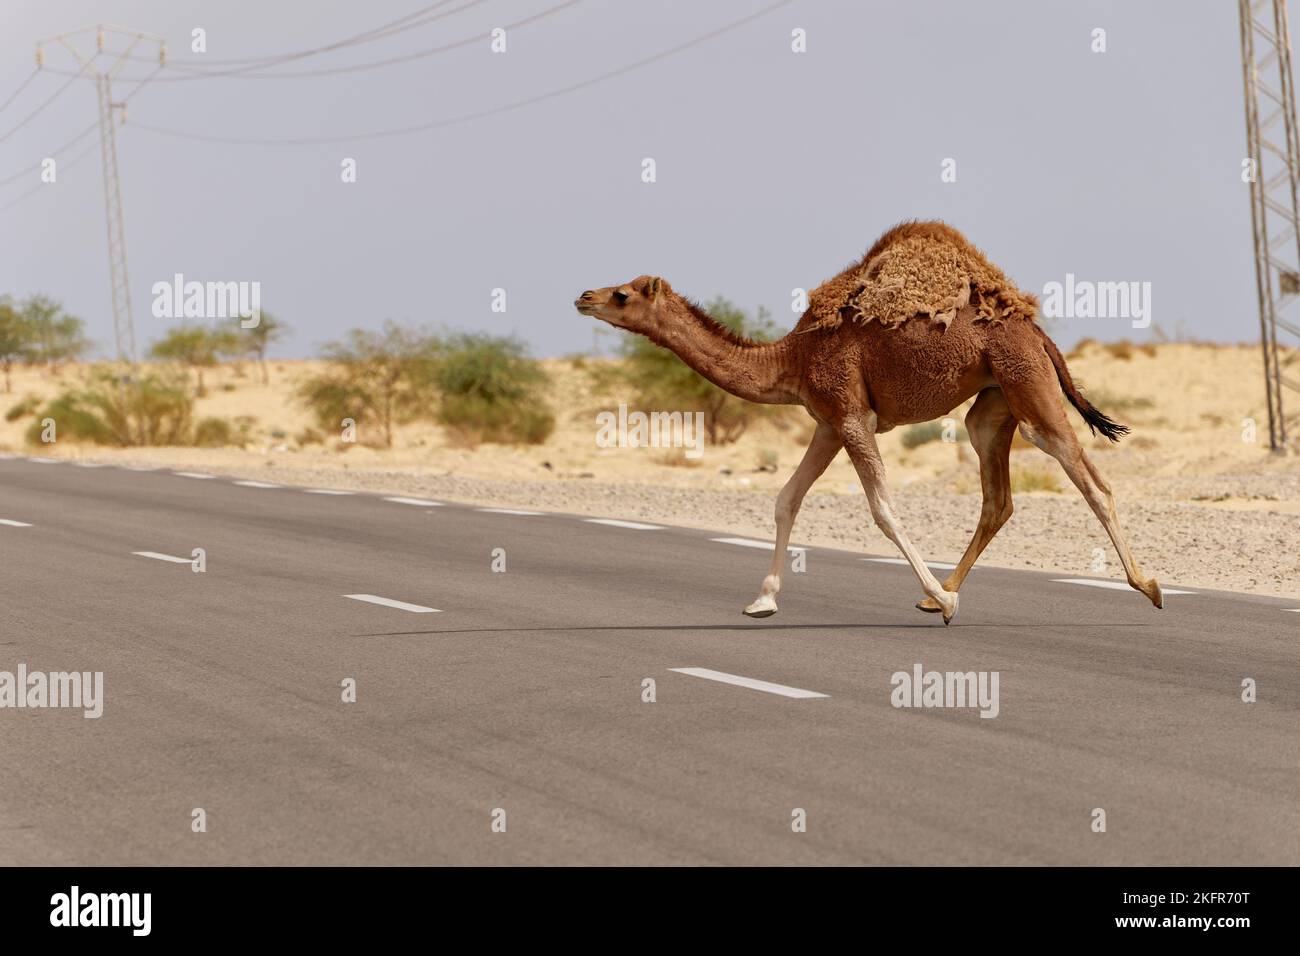 Chameau traversant la route dans le désert. Animaux sauvages. Méfiez-vous des chameaux qui traversent la route dans le désert. Conduire et se déplacer avec prudence. Banque D'Images